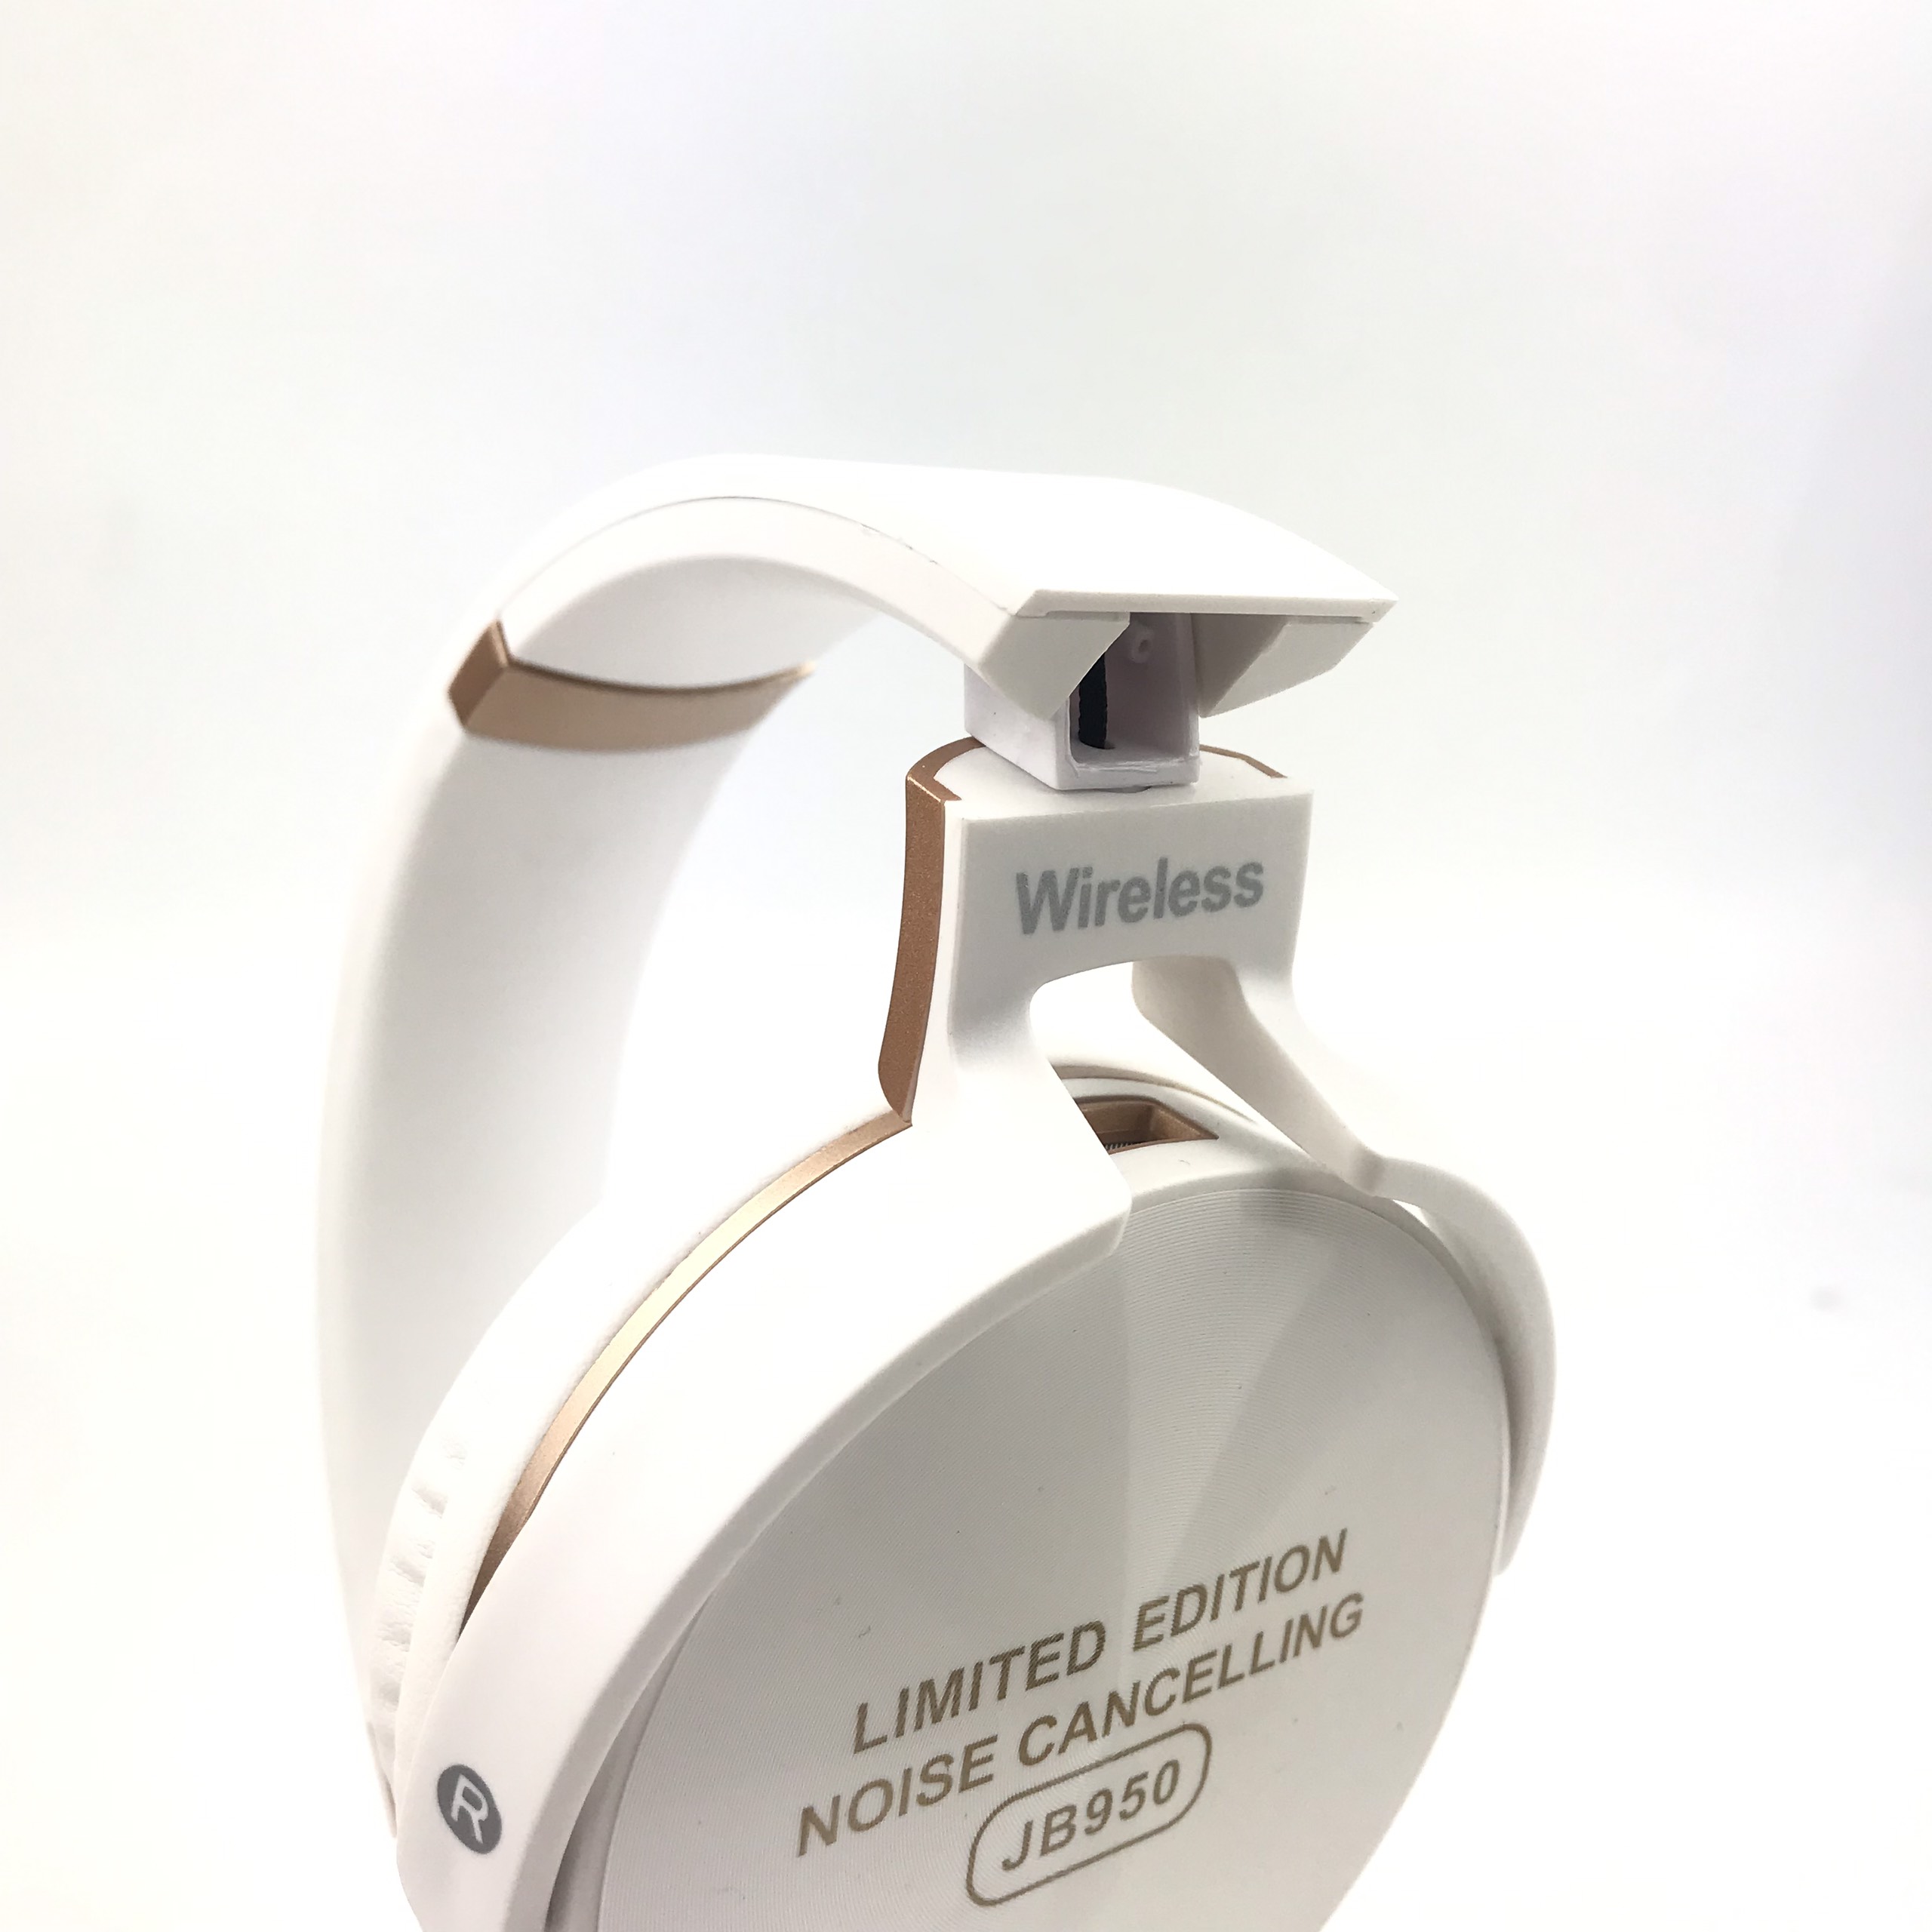 Tai Nghe Bluetooth Chụp Tai GUTEk JB950 Nghe Nhạc Không Dây Với Âm Thanh Cực Chất, Chuyên Bass, Siêu Trầm, Hỗ Trợ Cắm Thẻ Nhớ Và Cổng 3.5, Hai Màu Trắng Đen – Hàng Chính Hãng